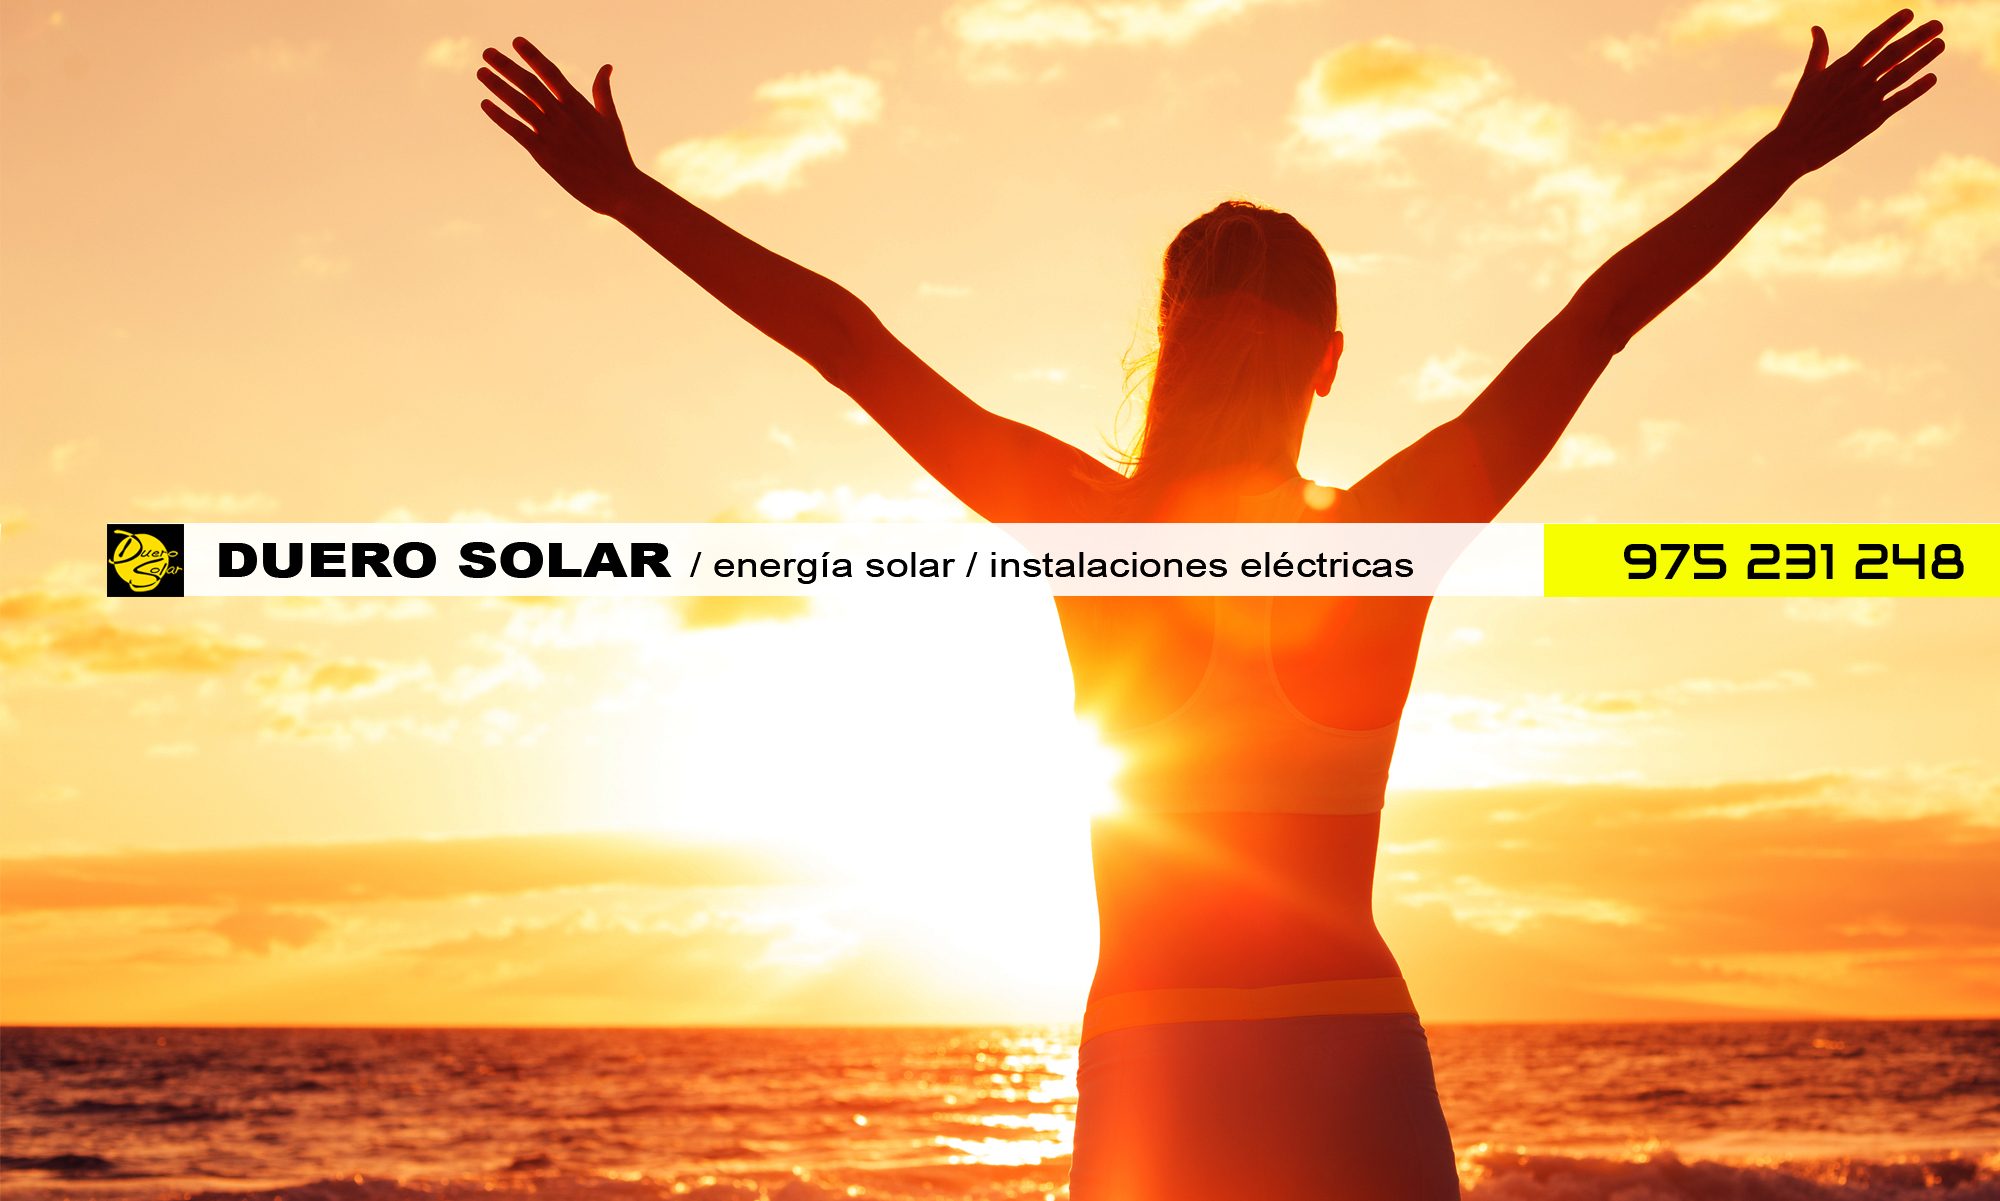 DUERO SOLAR / energía solar / instalaciones eléctricas